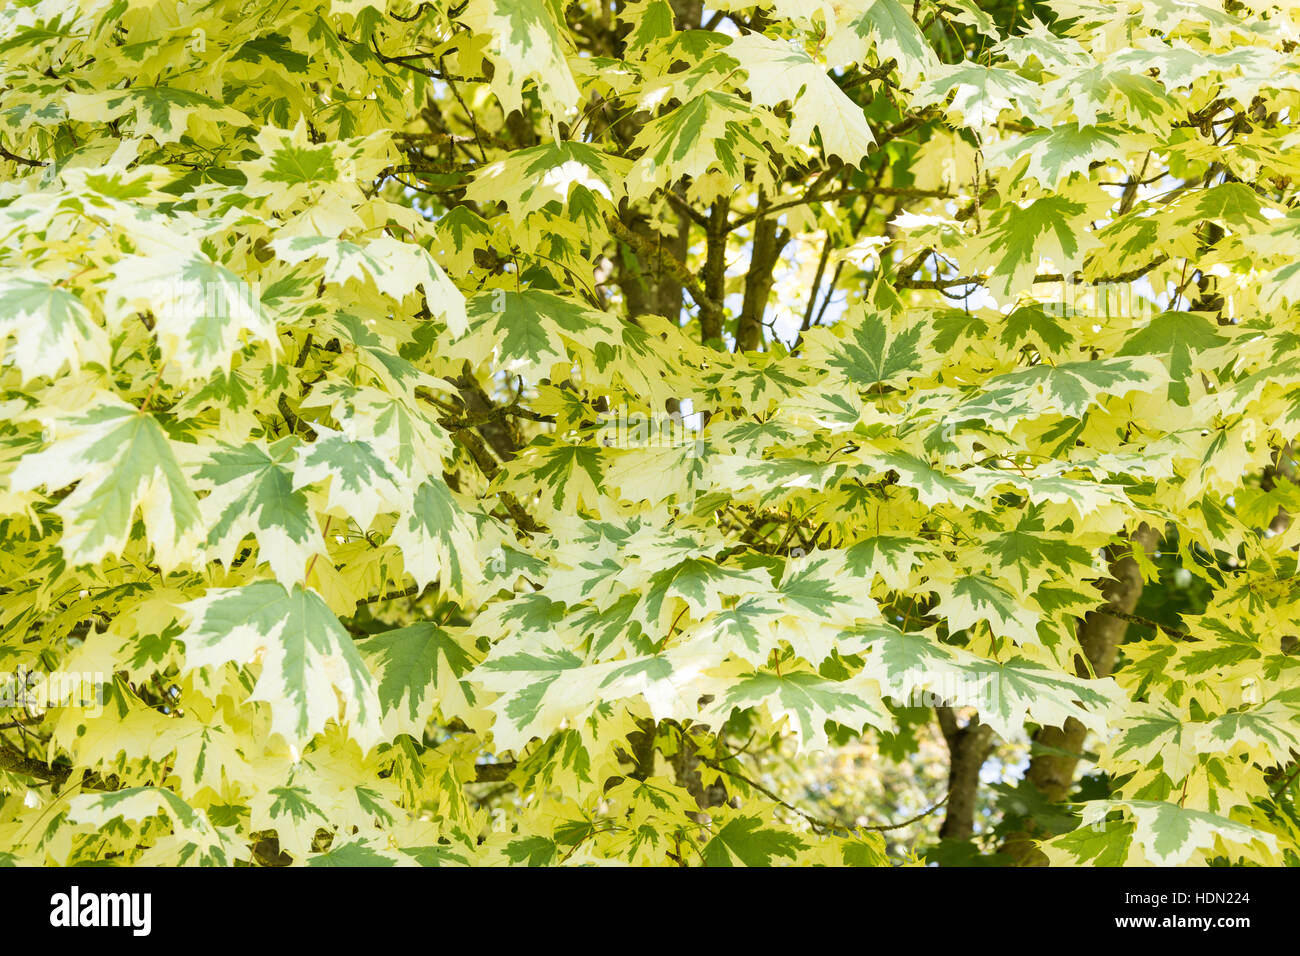 Variegated leaves on maple tree, Virginia Water, Surrey, England, United Kingdom Stock Photo